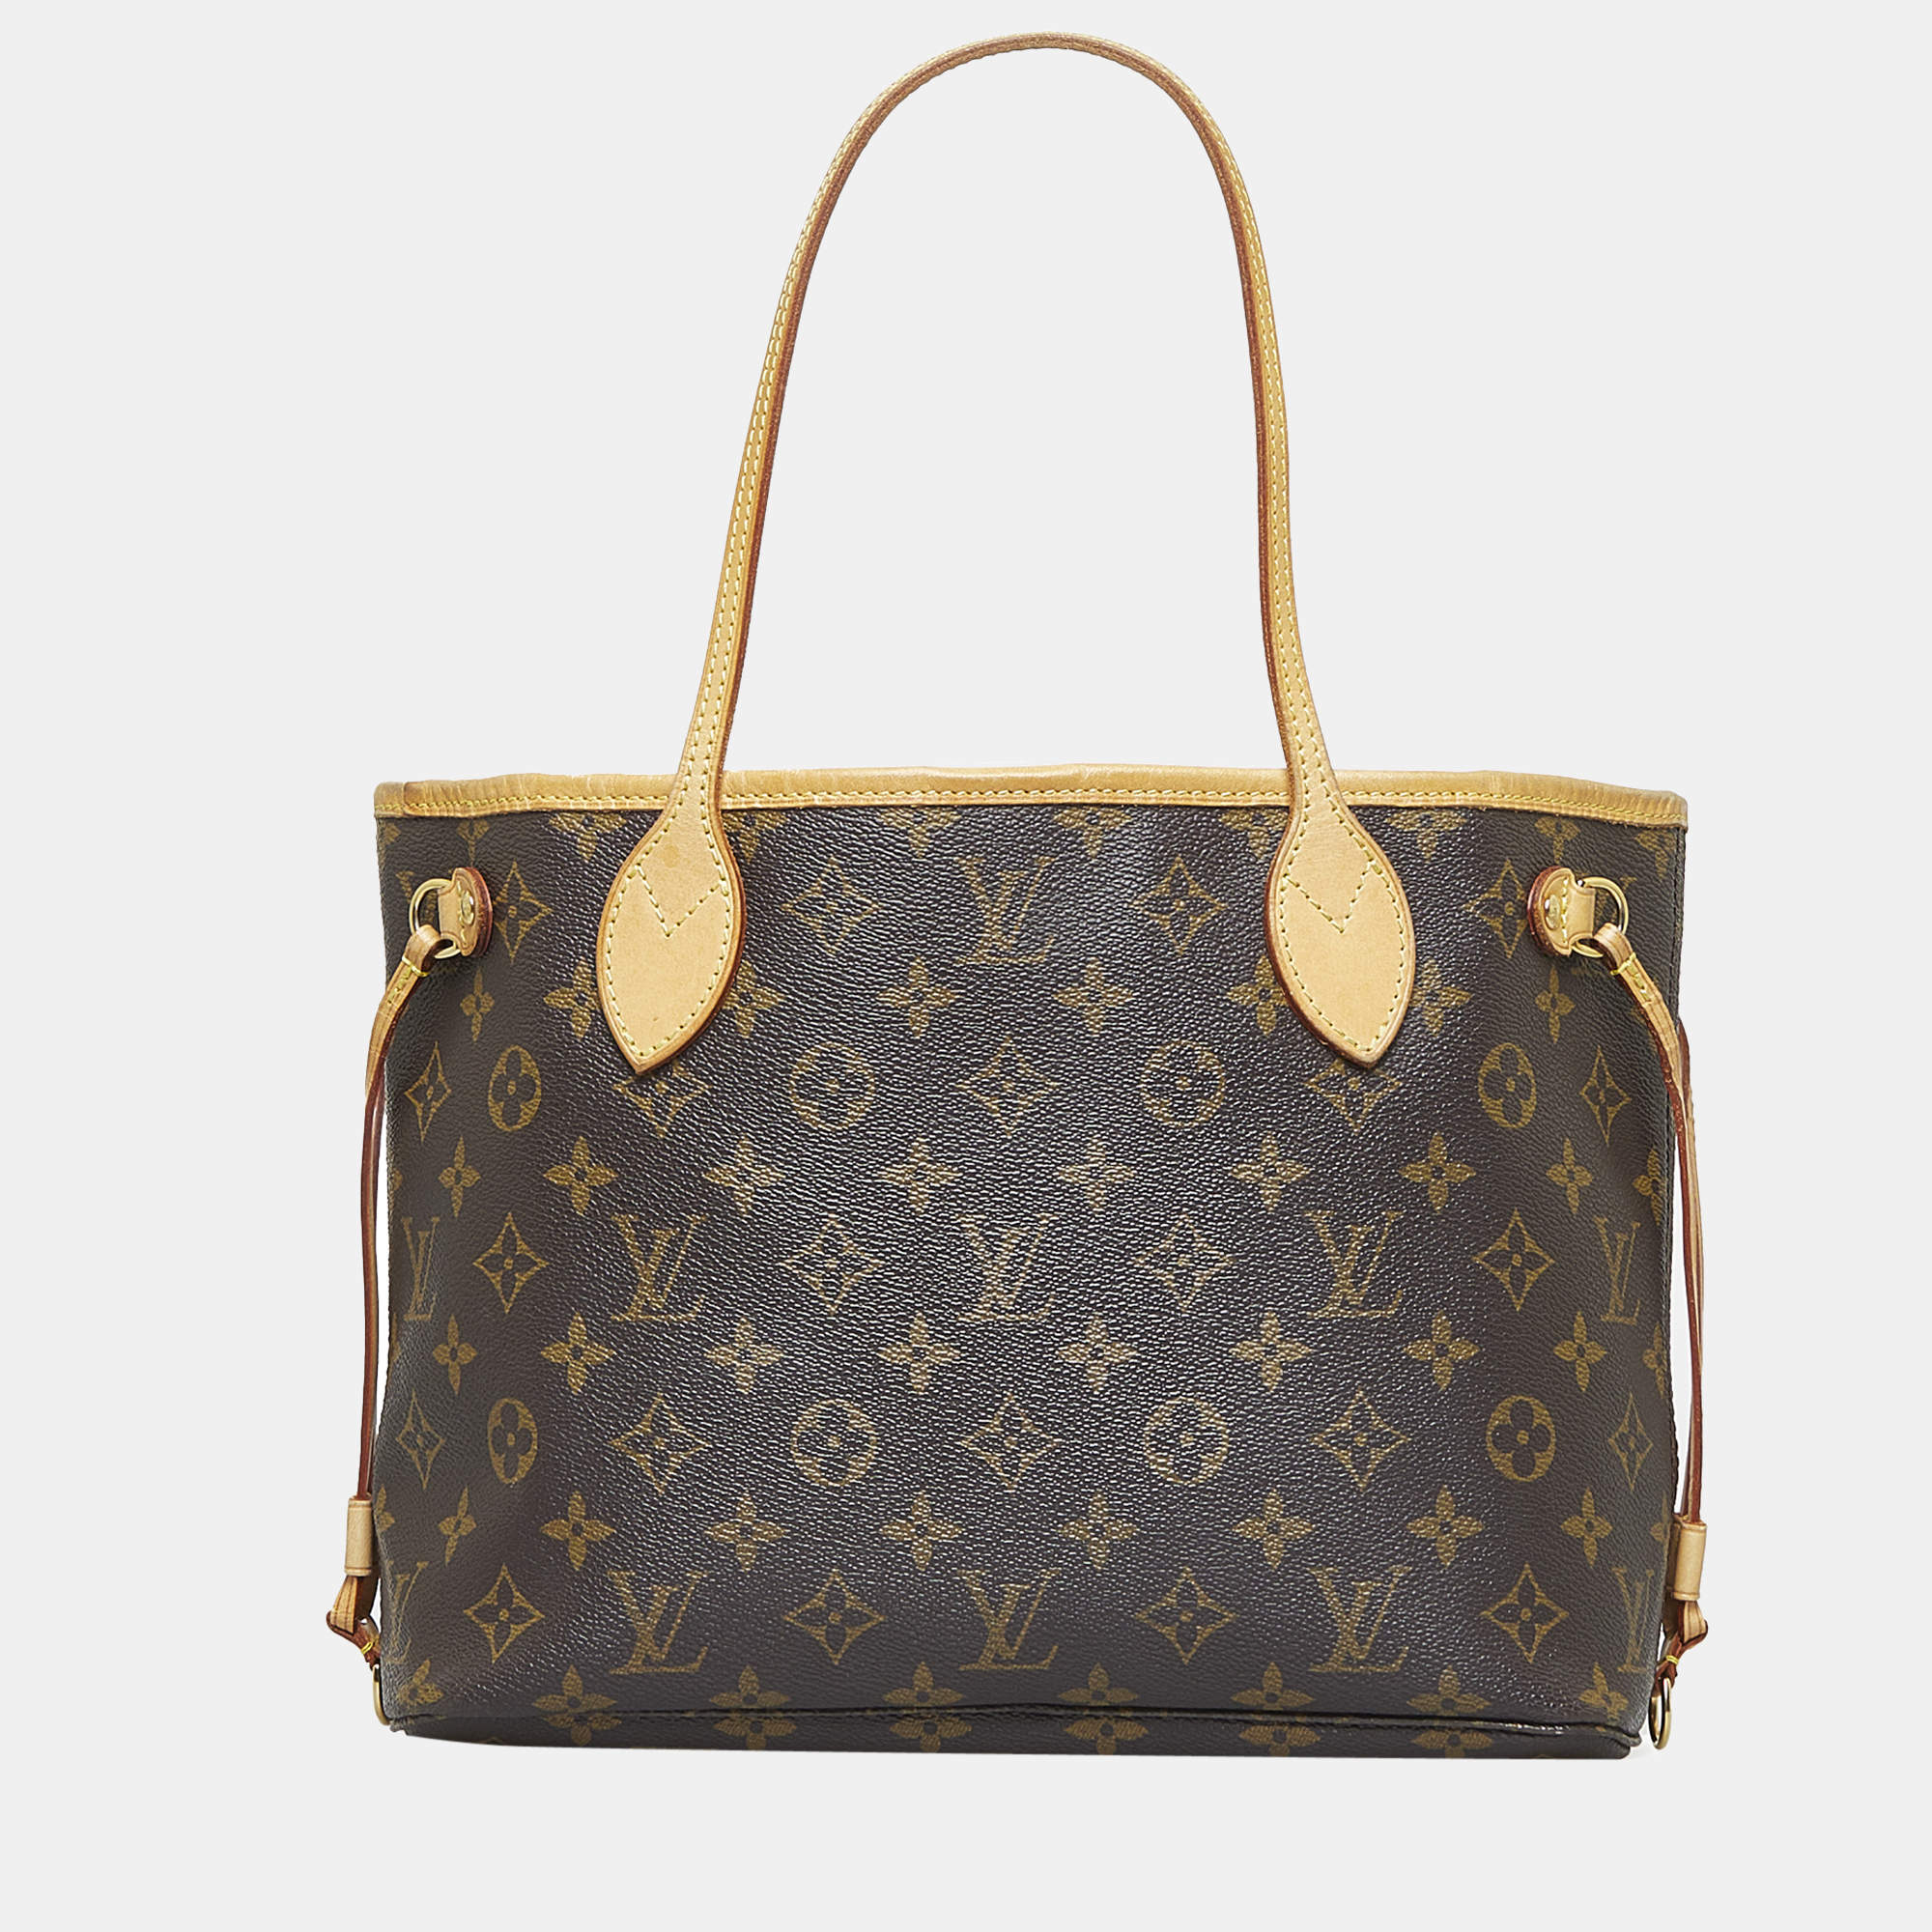 Louis Vuitton, Bags, Authentic Lv Louis Vuitton Neverfull Pm